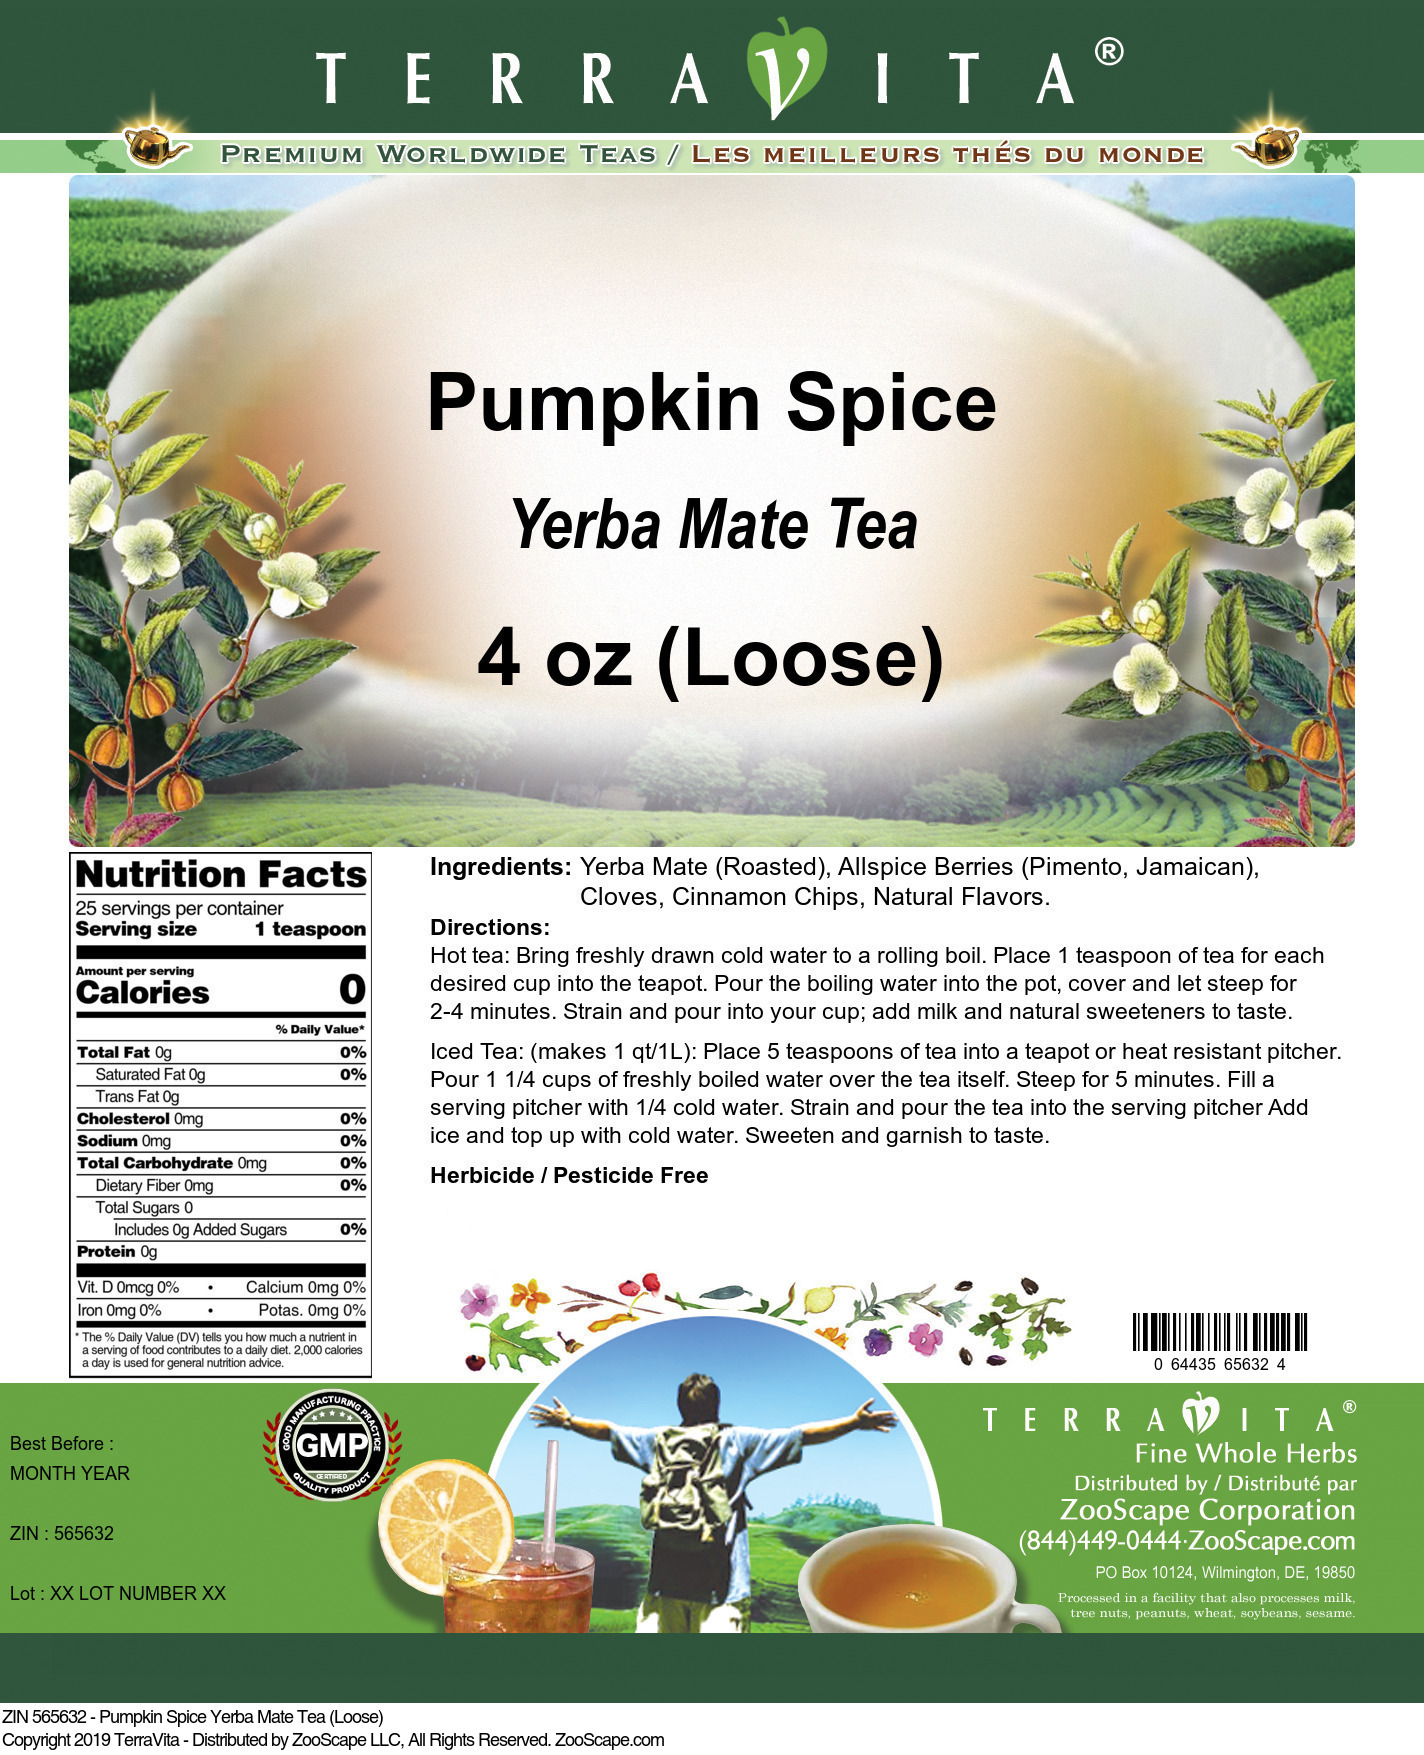 Pumpkin Spice Yerba Mate Tea (Loose) - Label